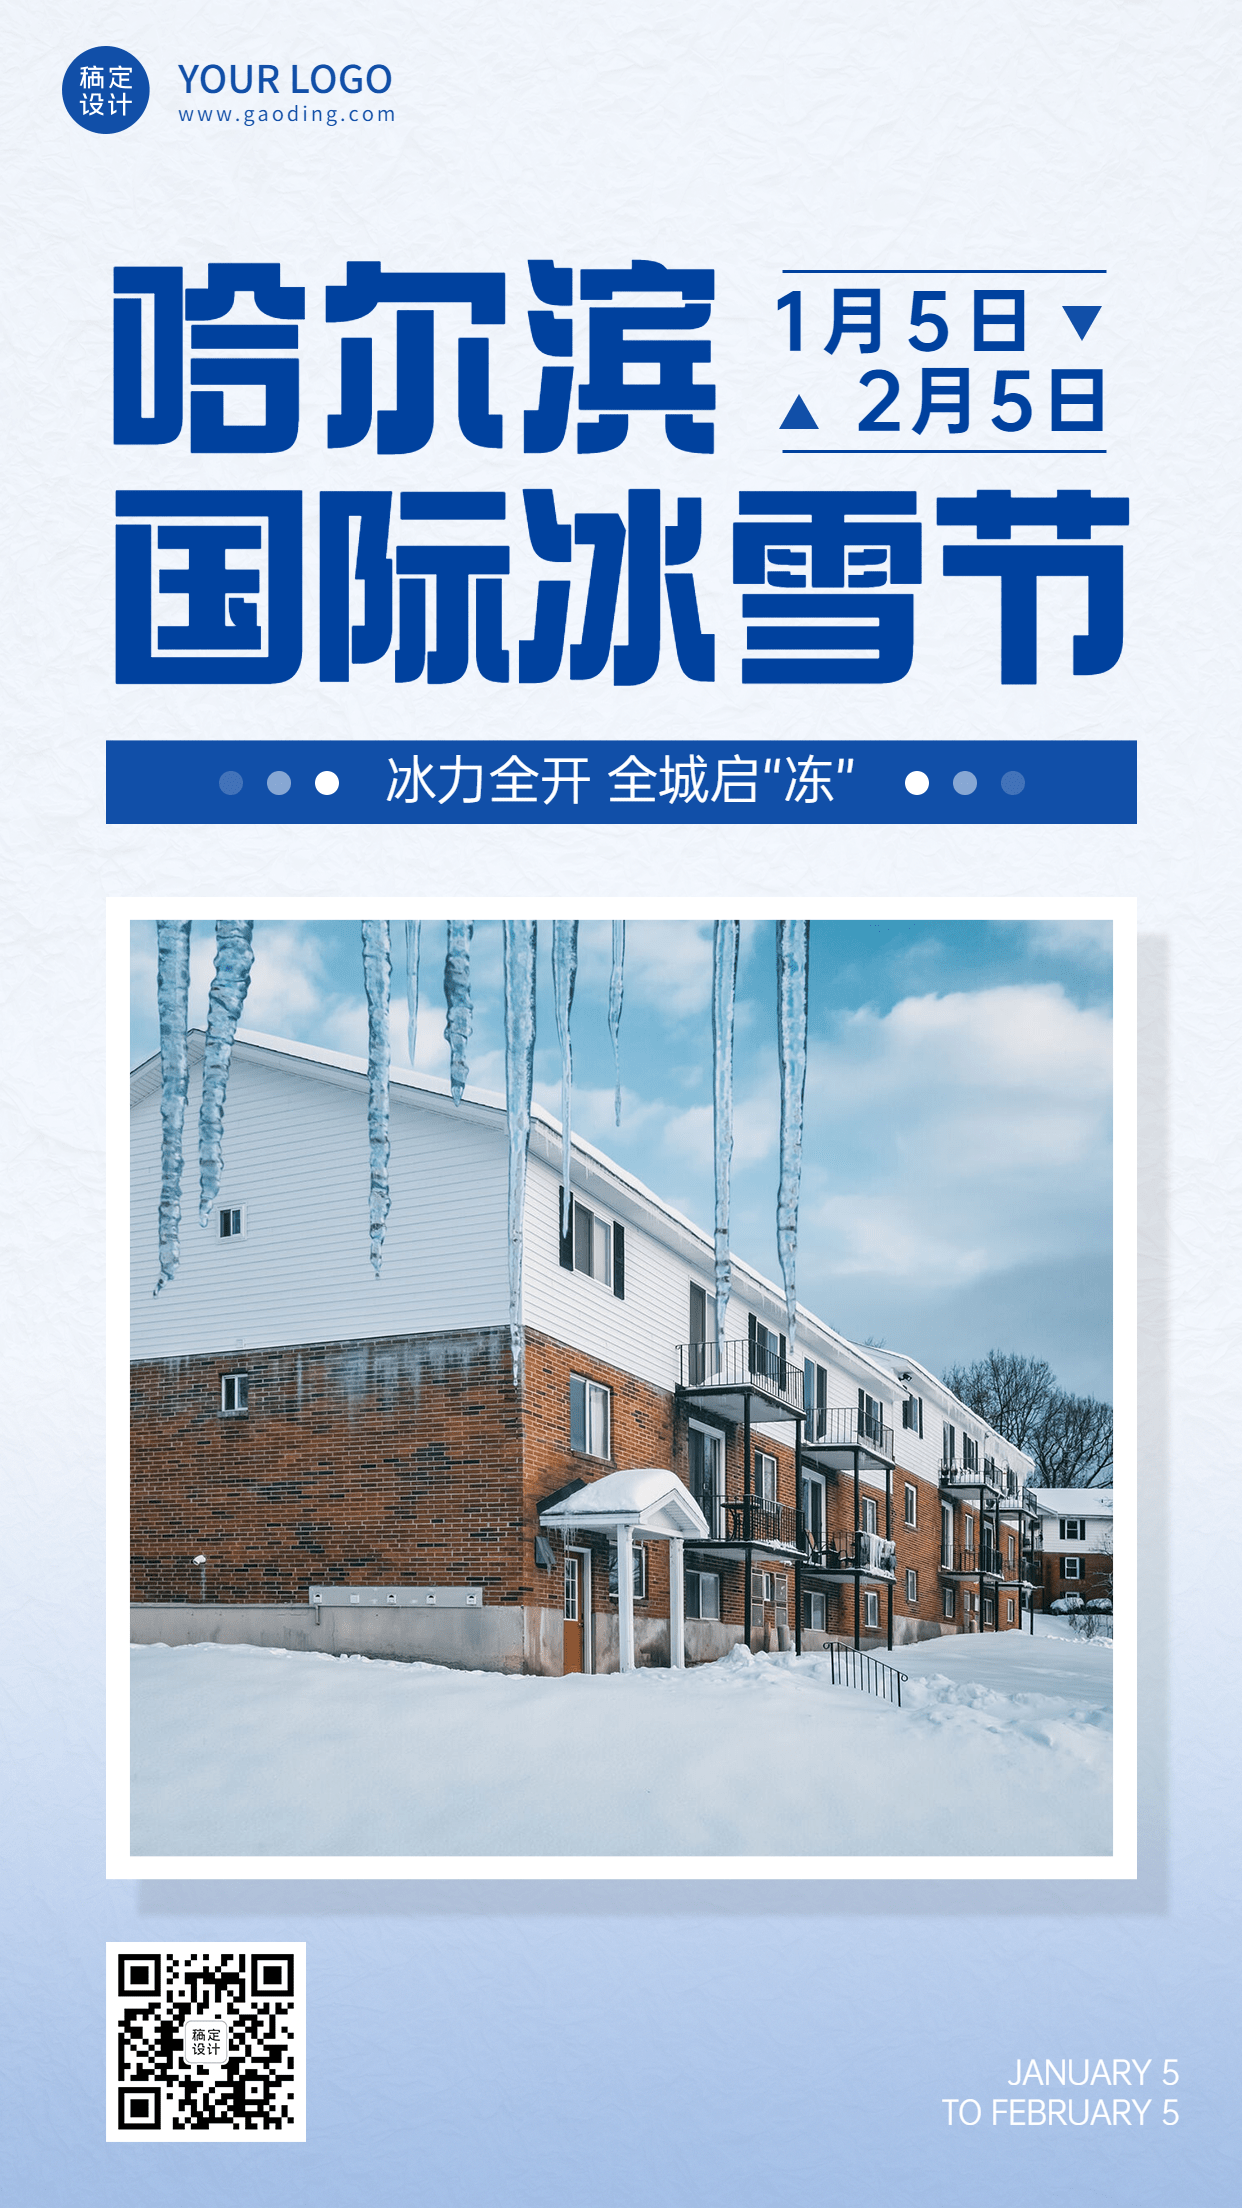 冬季冰雪旅游哈尔滨国际冰雪节活动宣传简约实景海报预览效果